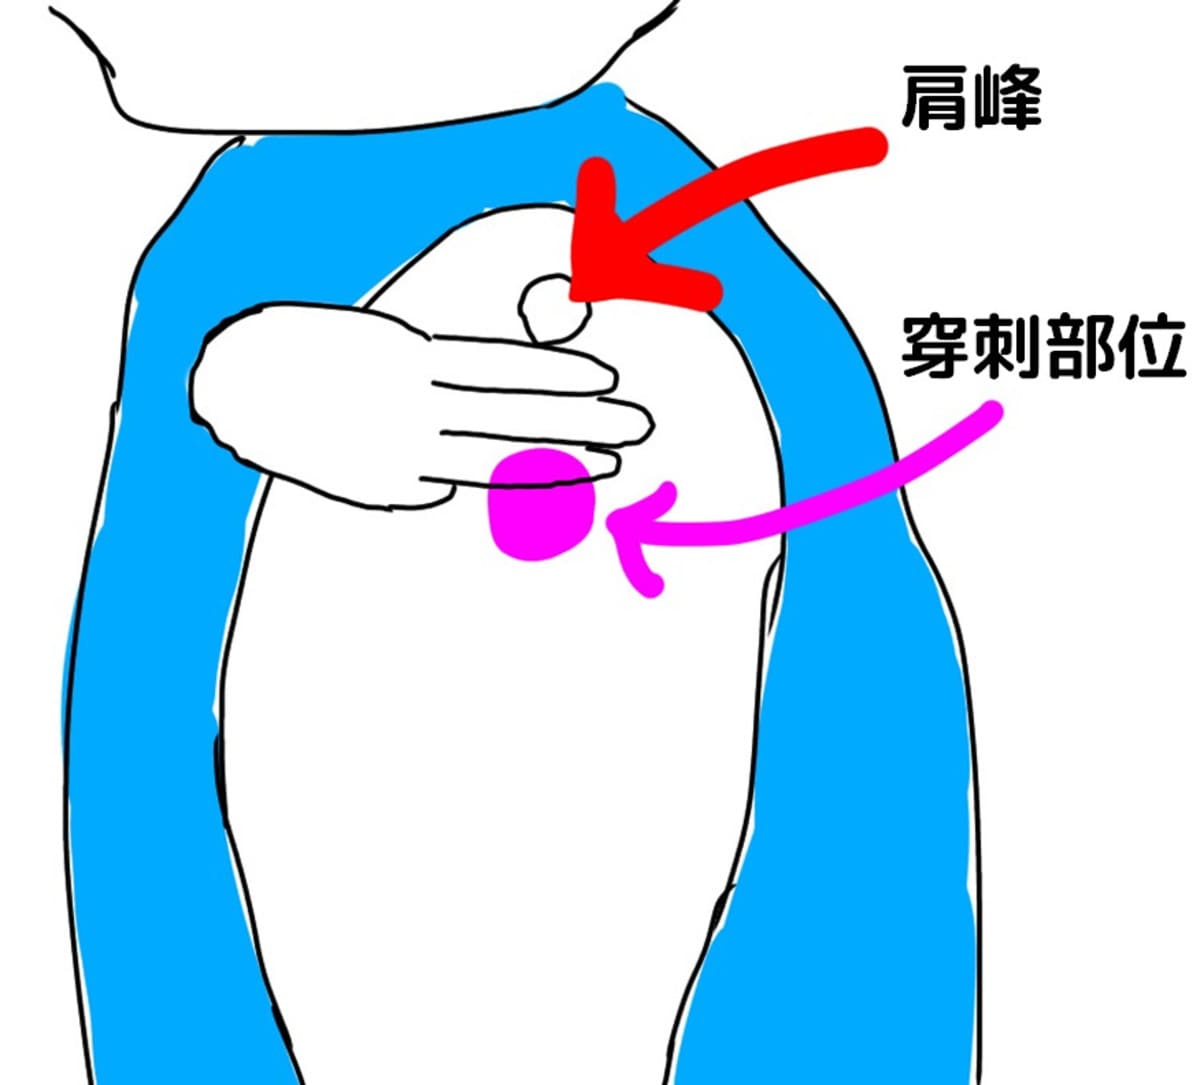 肩の筋肉注射の穿刺部位を確認～三角筋は肩峰から3横指下～